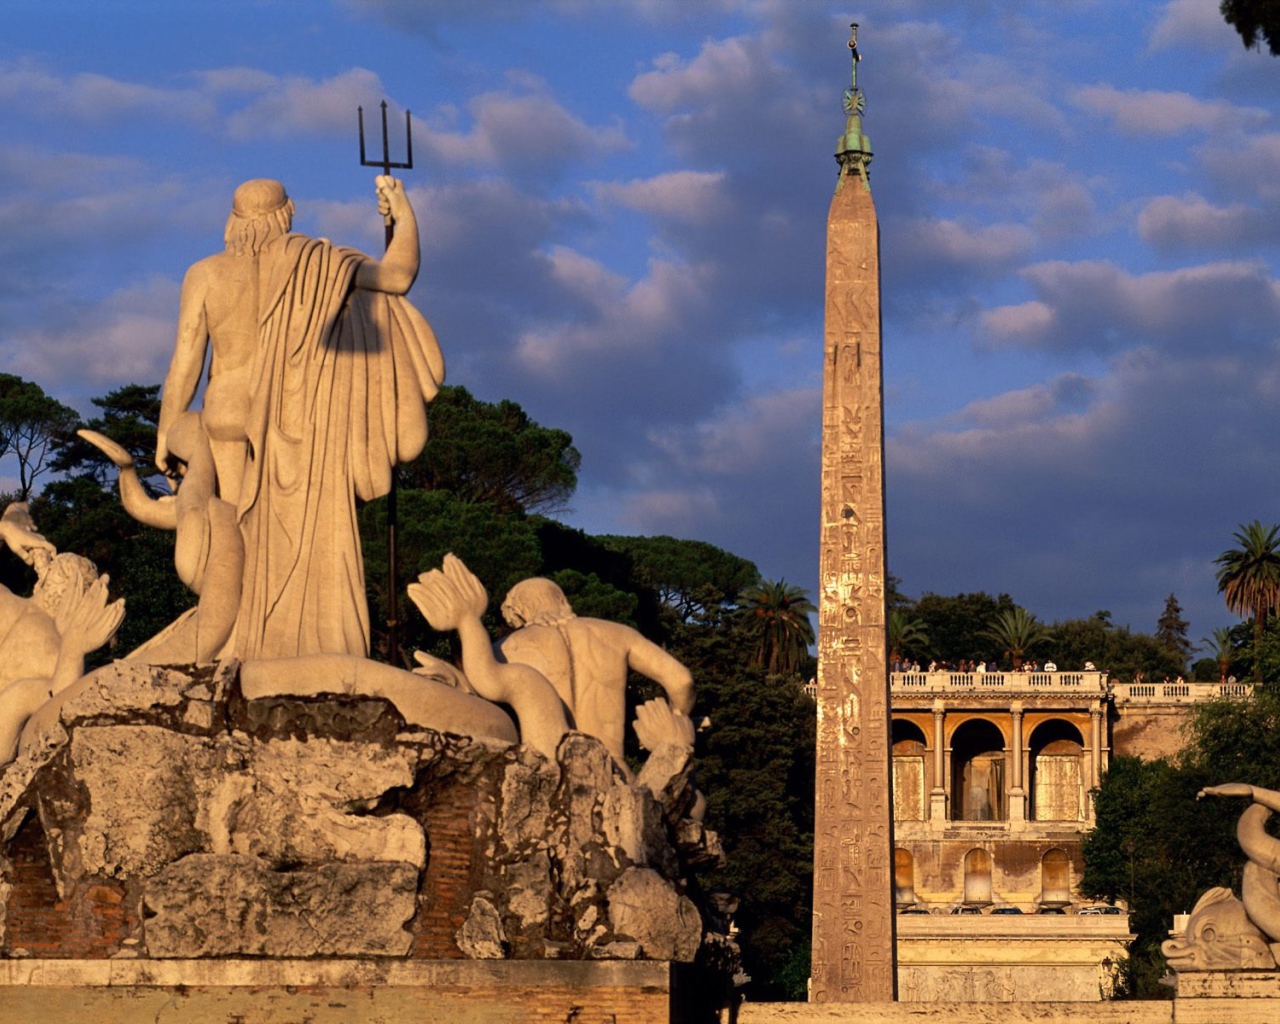 Статуи богов в Риме, Италия